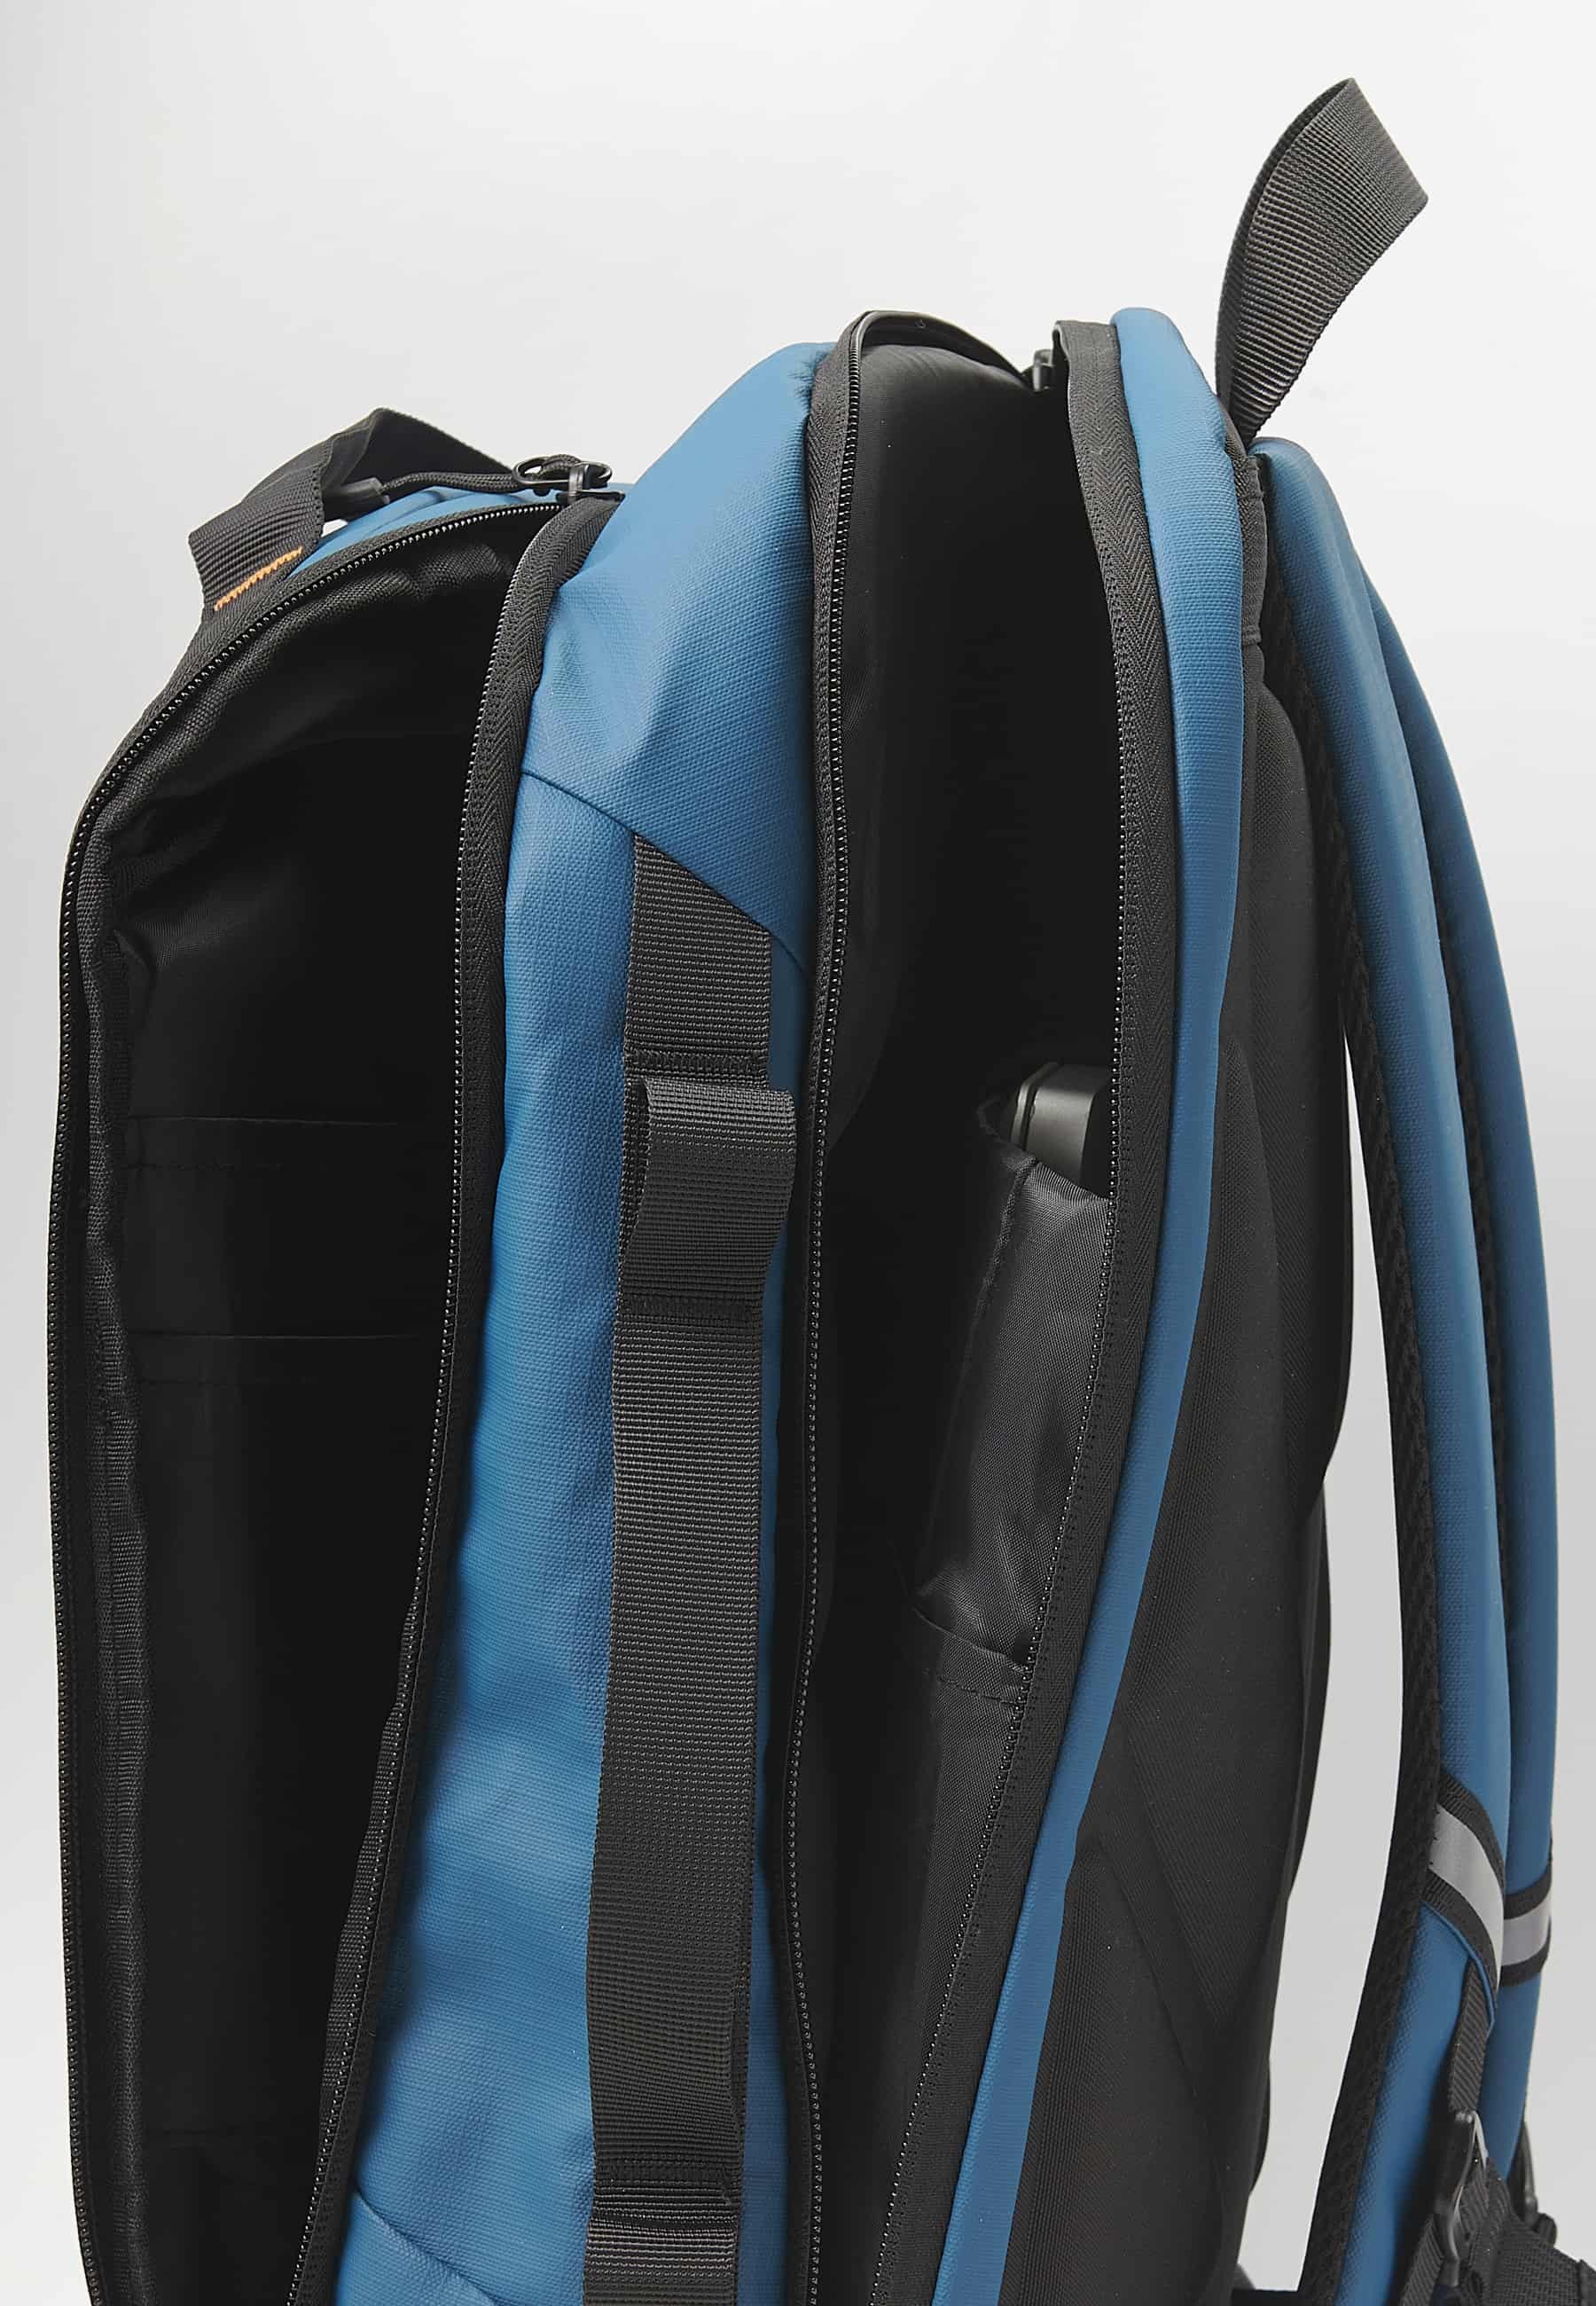 Sac à dos Koröshi avec deux compartiments zippés, un pour un ordinateur portable et bretelles réglables en bleu